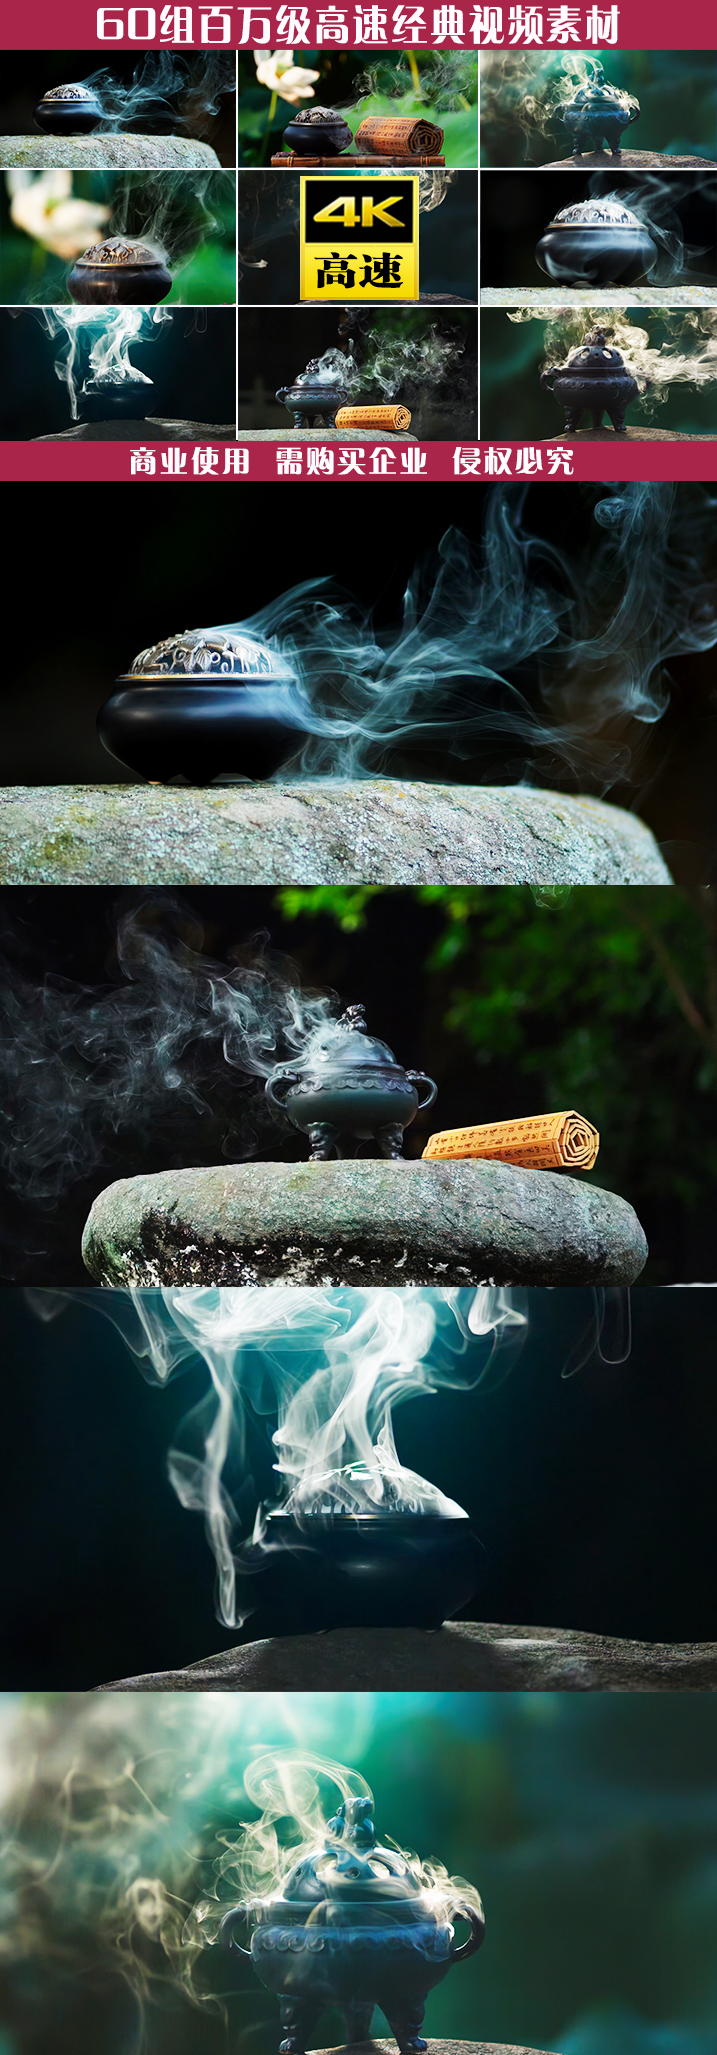 香炉书法哲学历史道文化茶文化香文化古文化